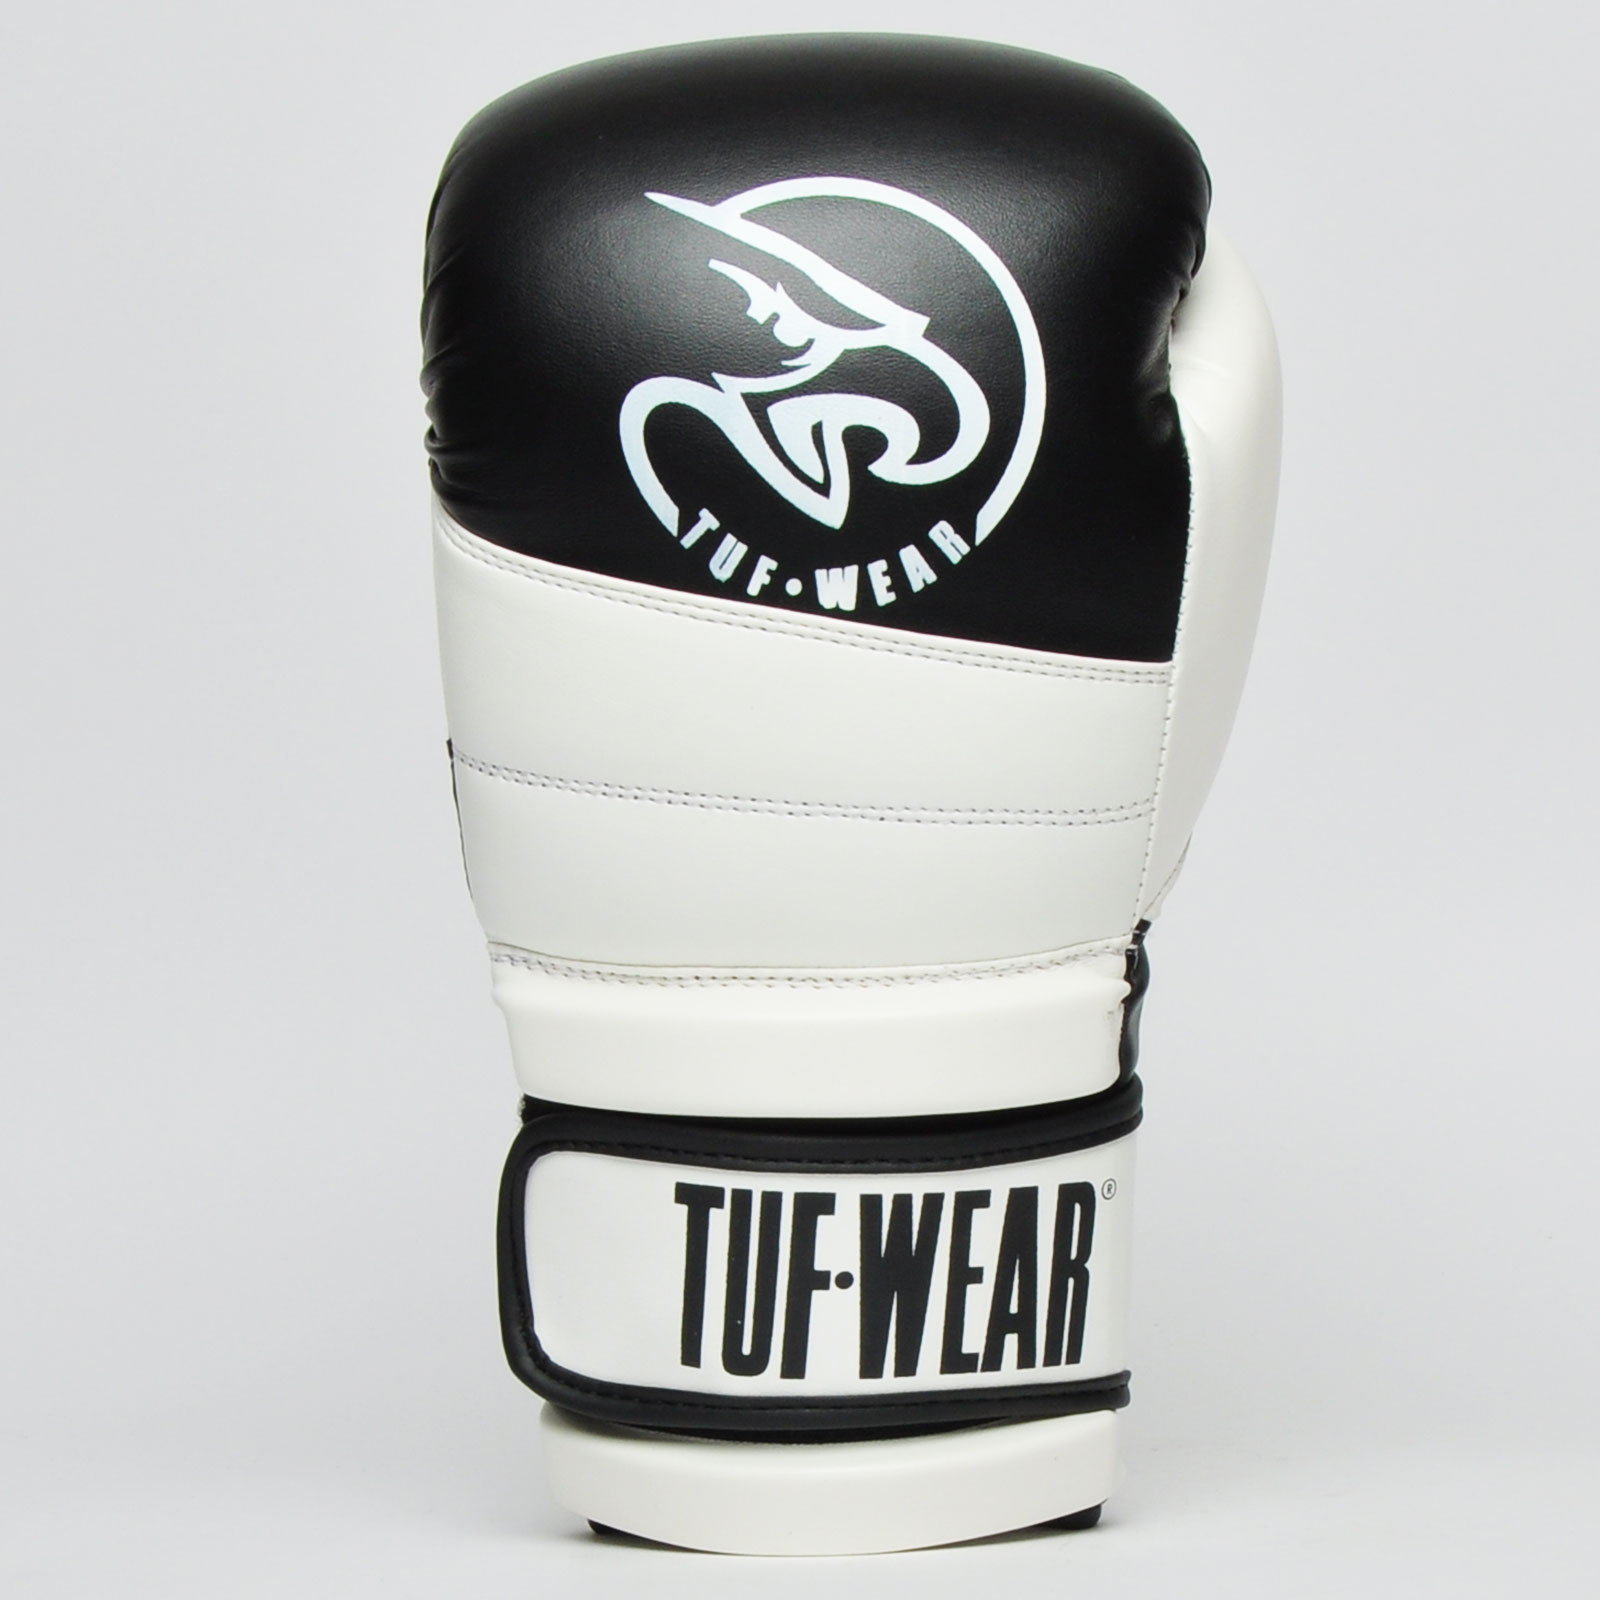 Download Tuf Wear Typhoon Training Gloves - Tuf Wear Direct Ltd